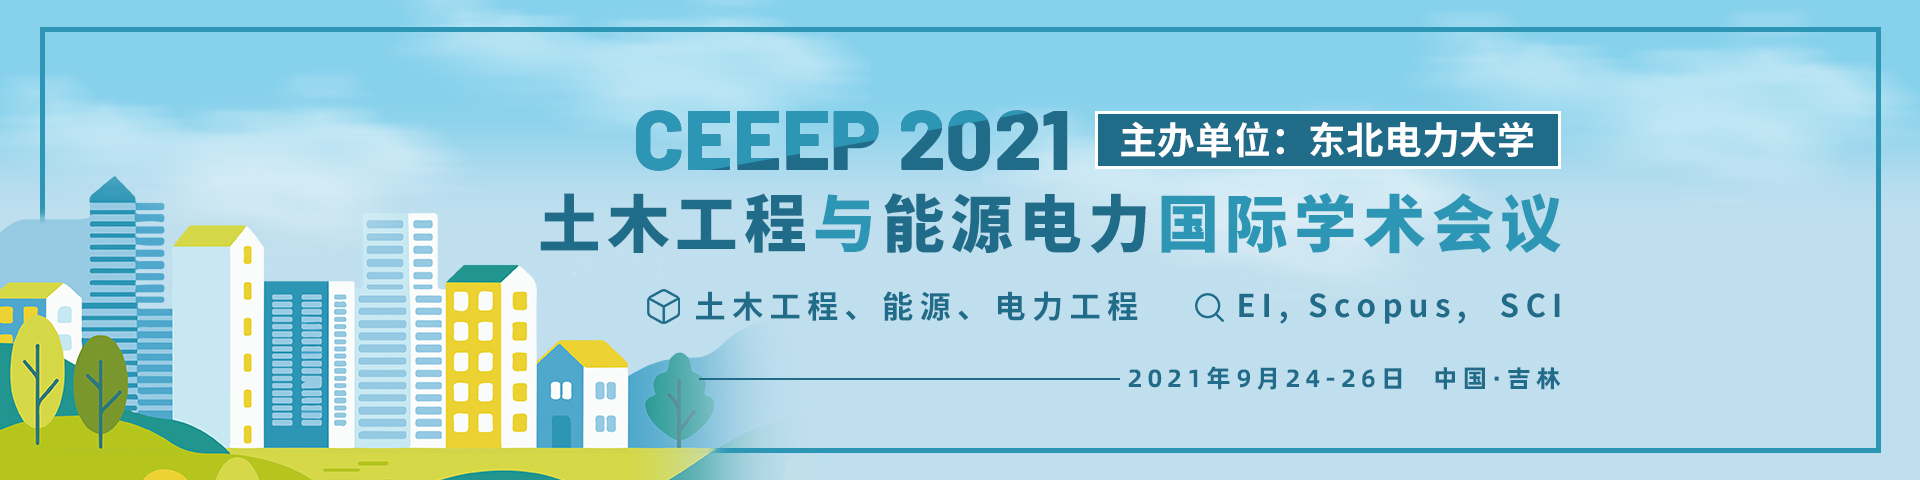 9月-吉林-CEEEP2021-艾思-何霞丽-20210318 .jpg